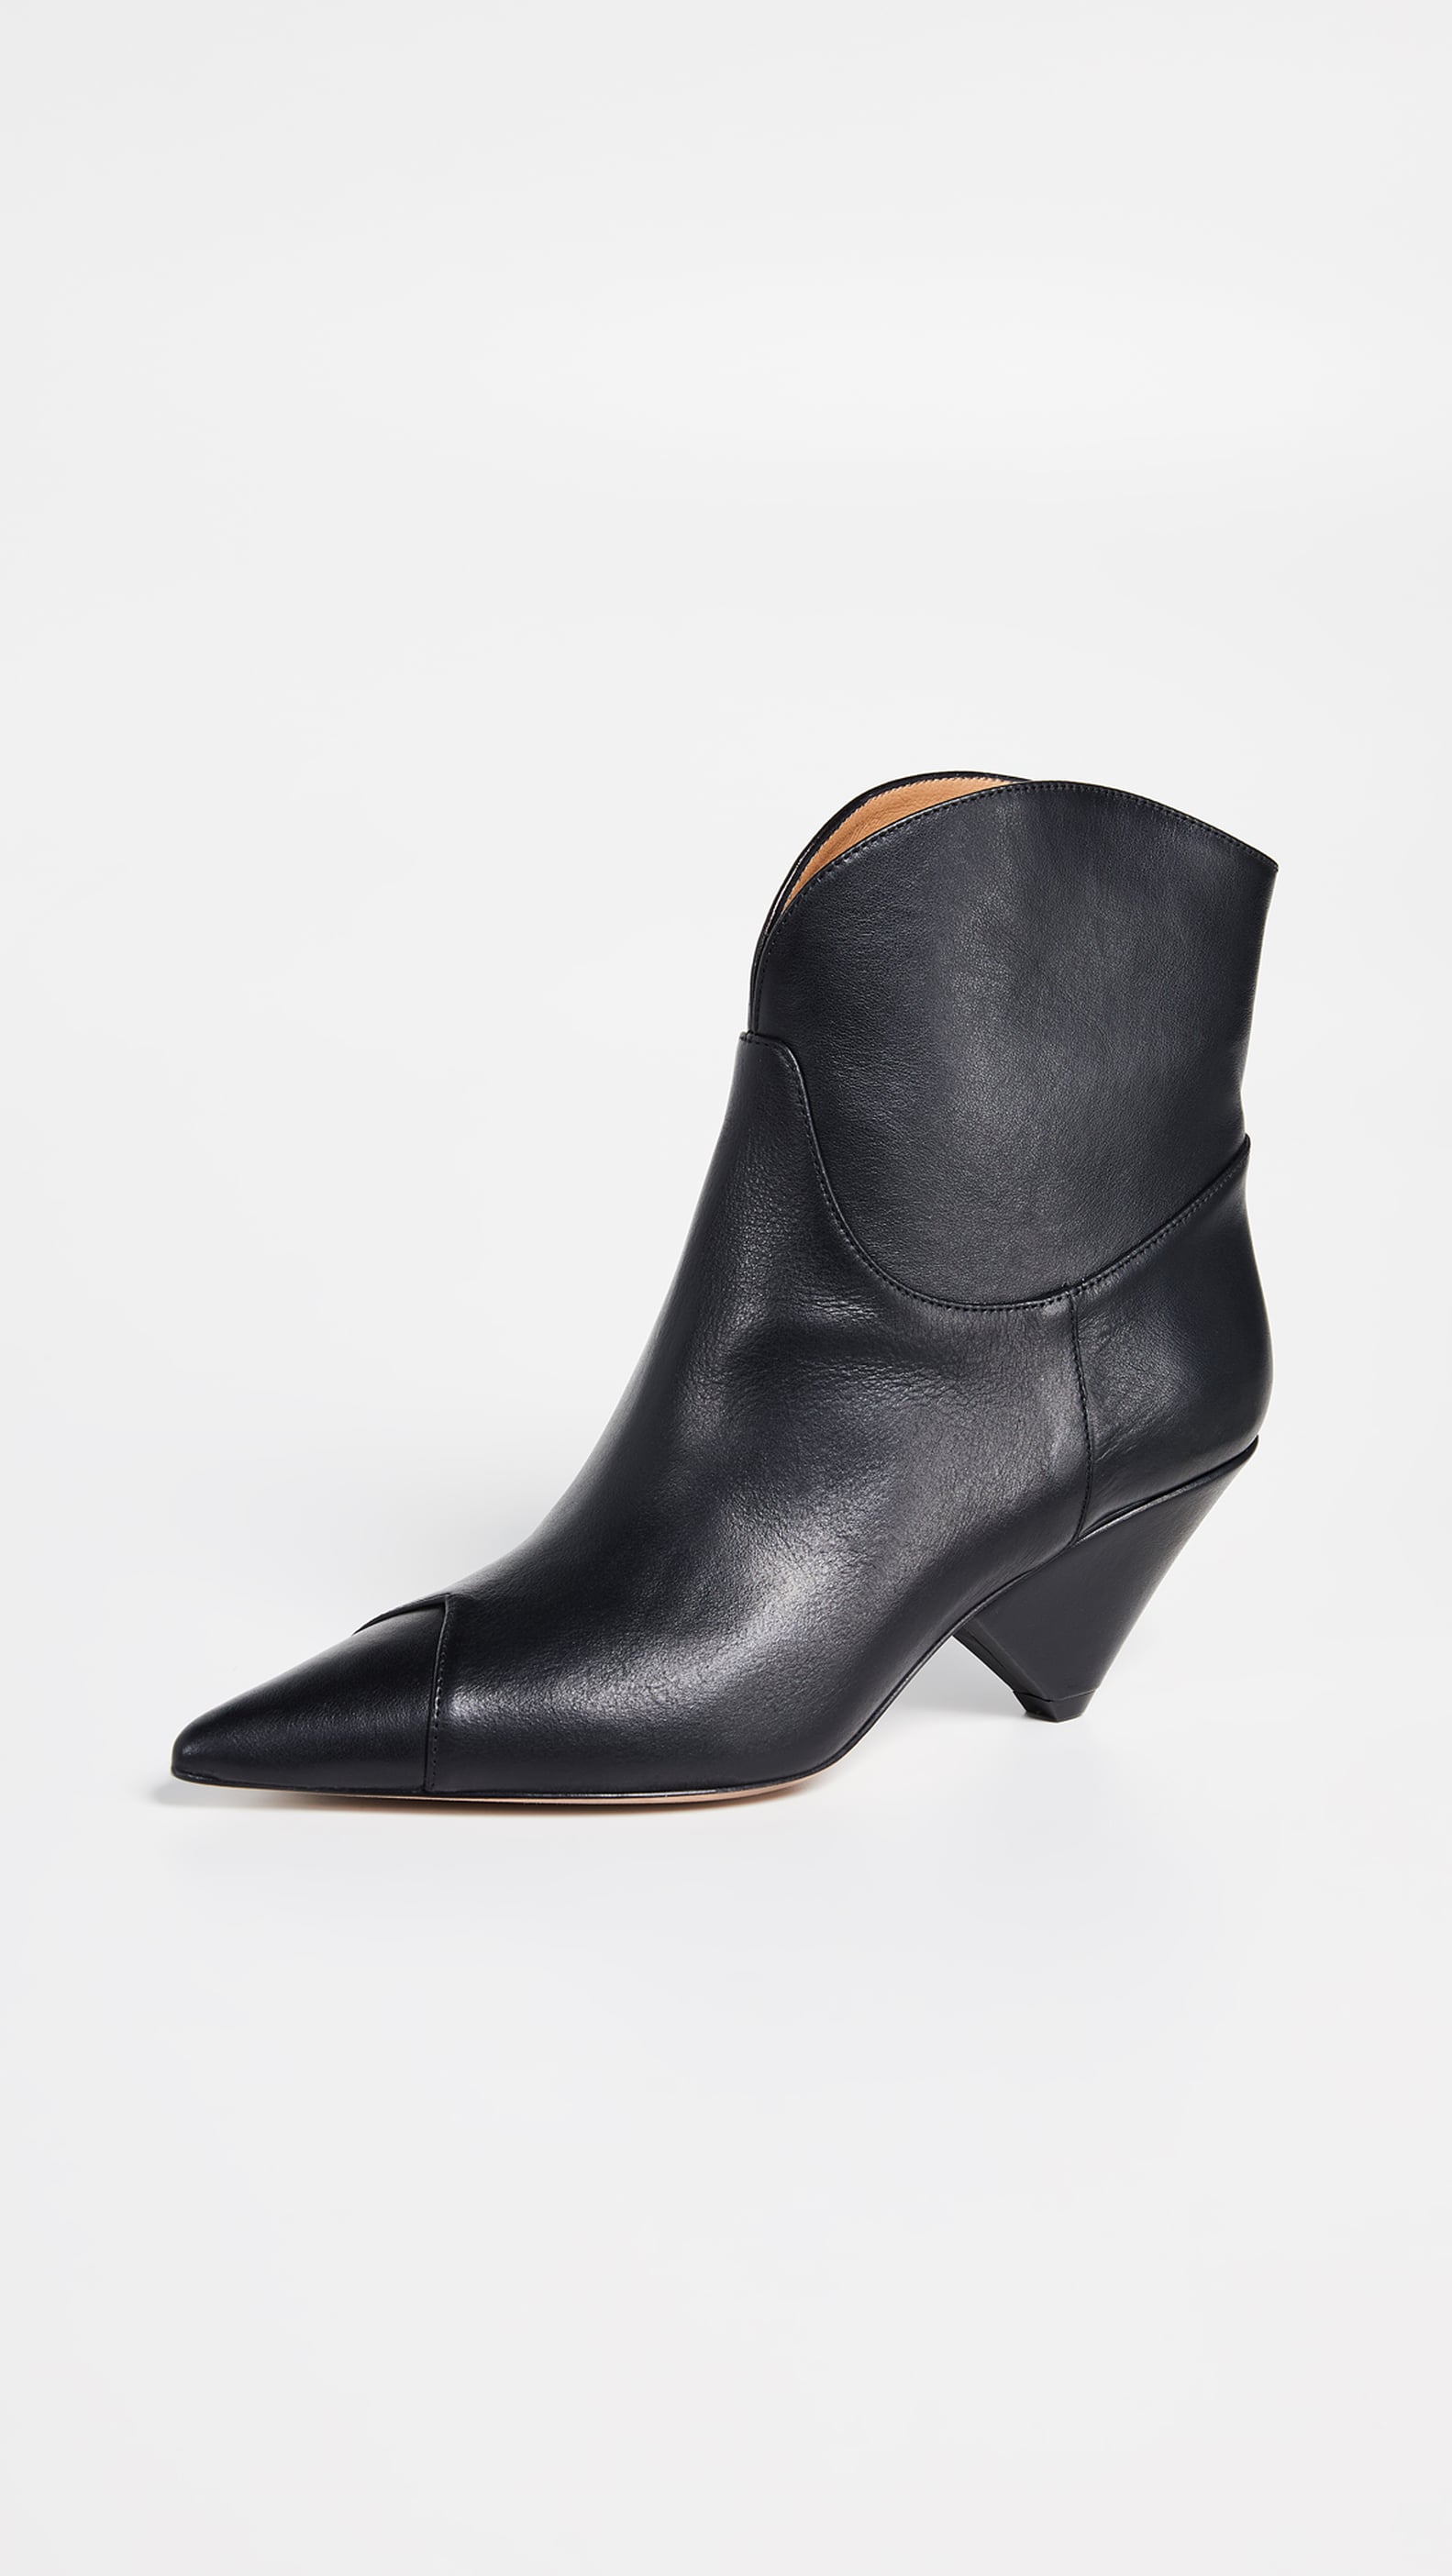 Hailey Baldwin's Black Ash Boots January 2019 | POPSUGAR Fashion